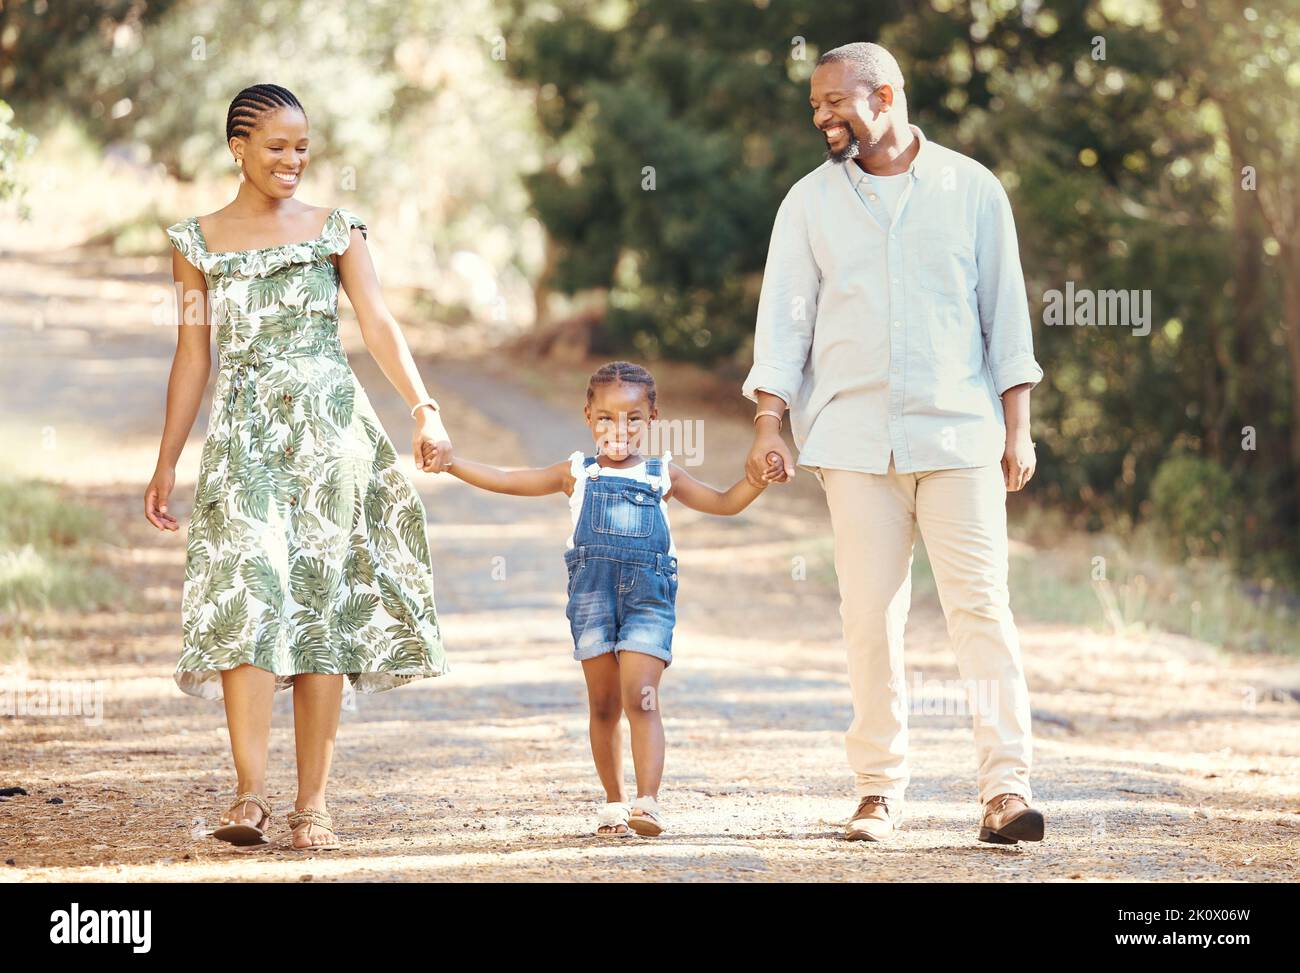 Schwarze Familie, liebe und aktive Eltern, die mit ihrem Kind durch die Natur spazieren, um Abenteuer und Spaß im Freien zu erleben. Glücklicher afrikanischer Mann und Frau mit Stockfoto